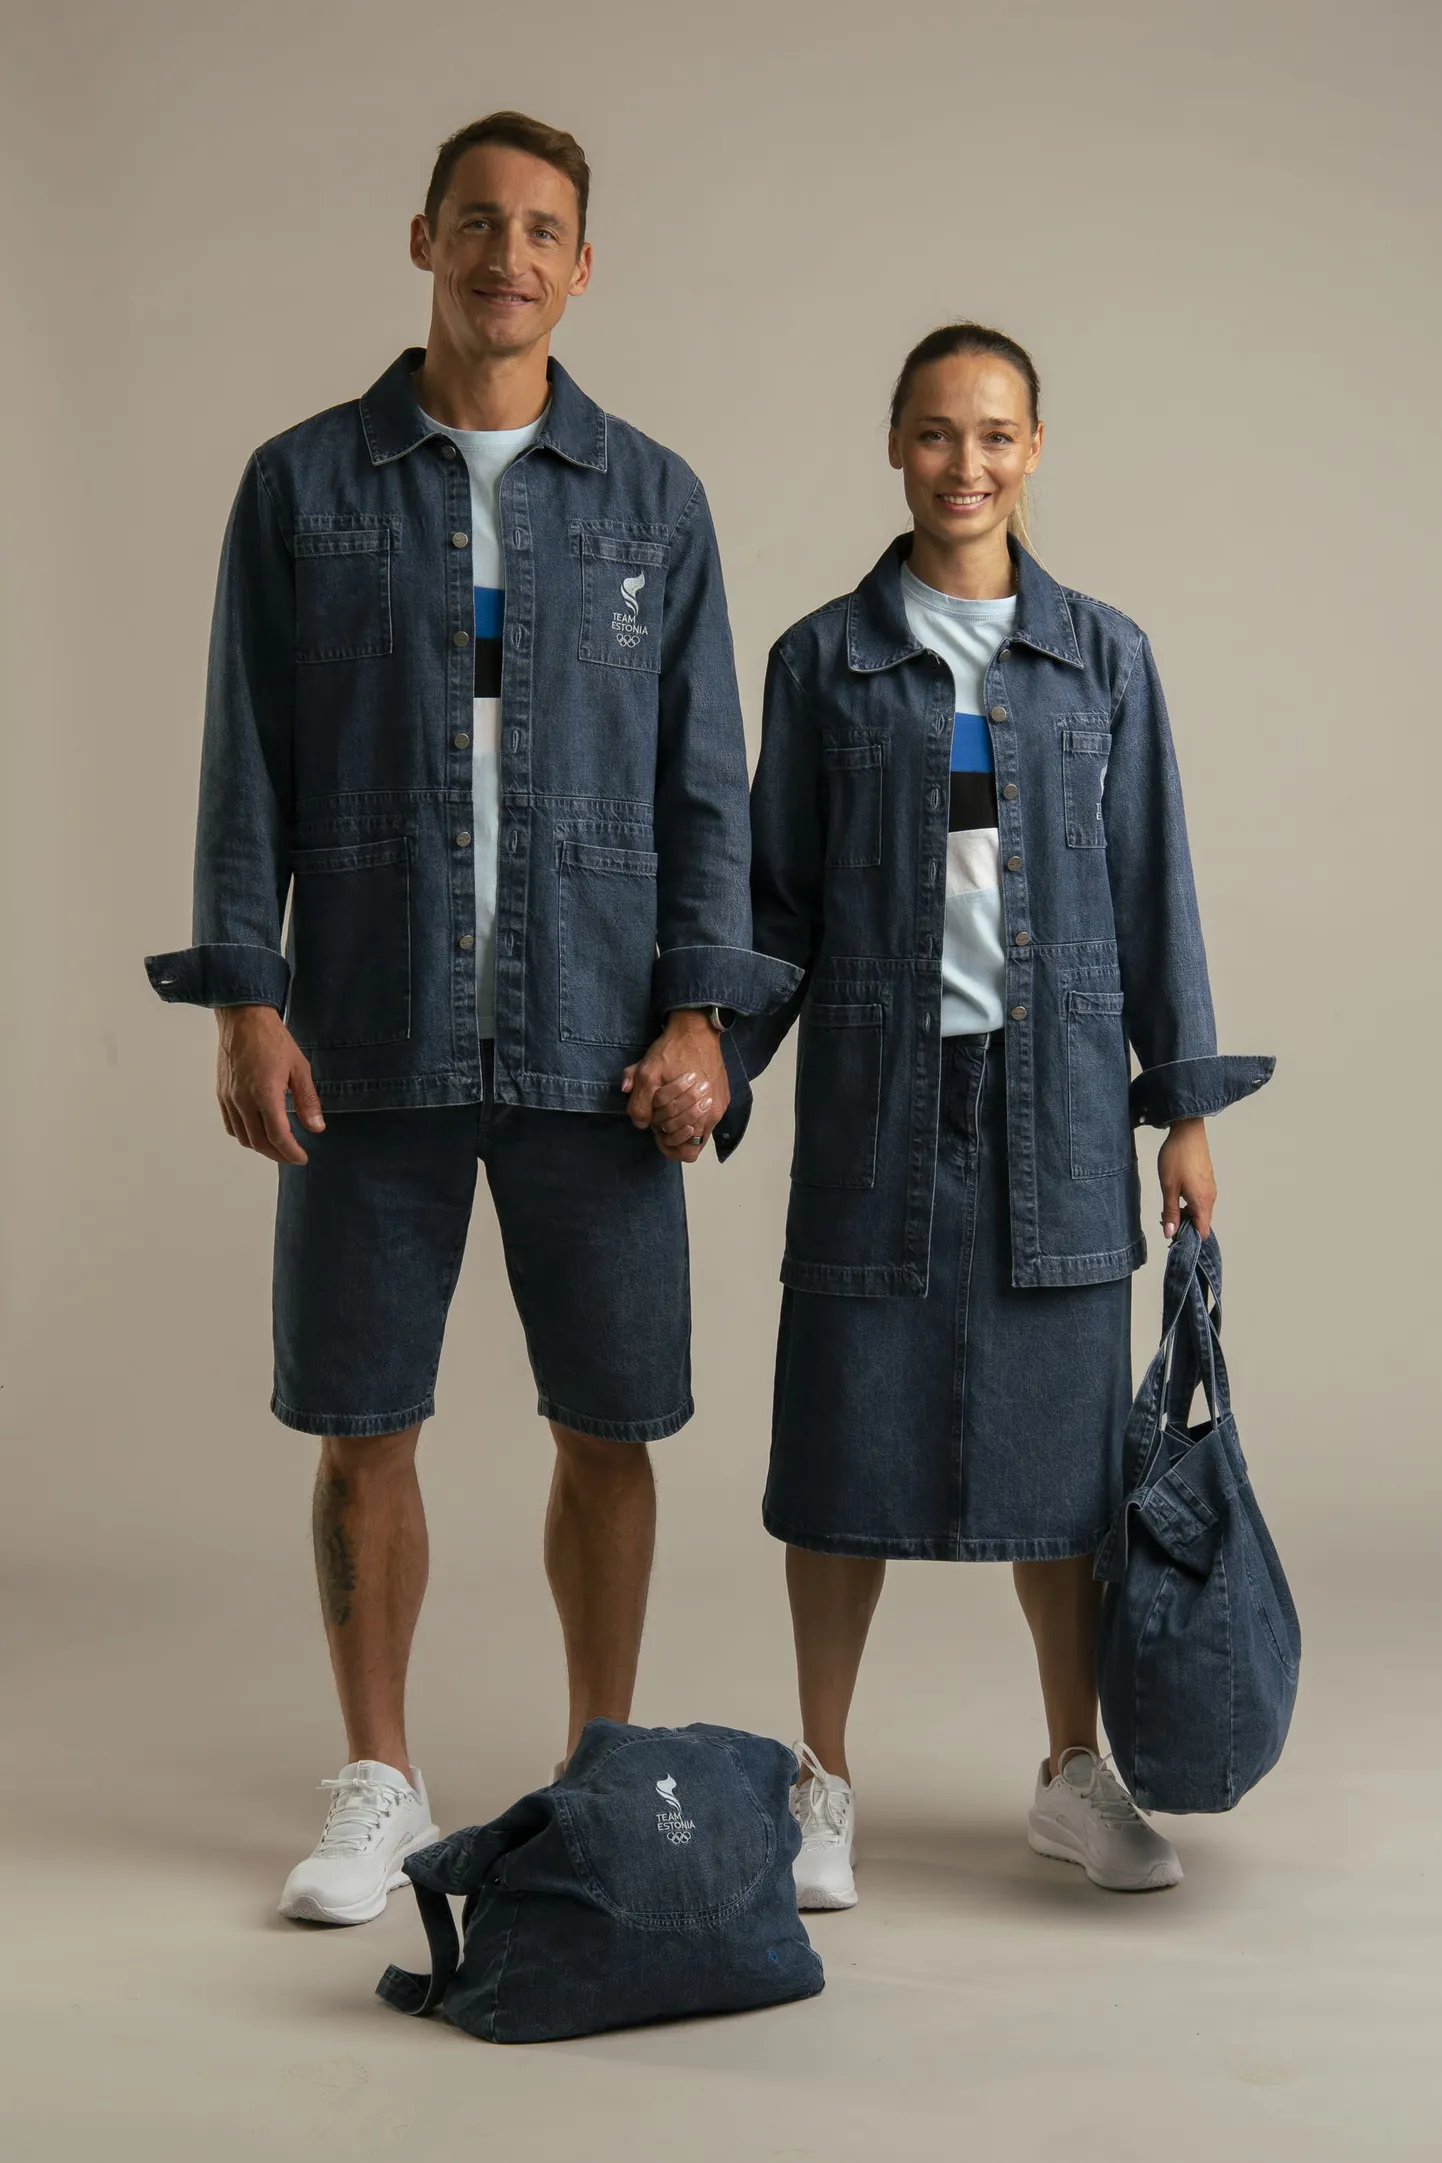 Kollektsiooni esimodellid Allar Raja ja Ksenija Balta kiidavad võimalust kanda rõivaid ka pärast olümpiat.